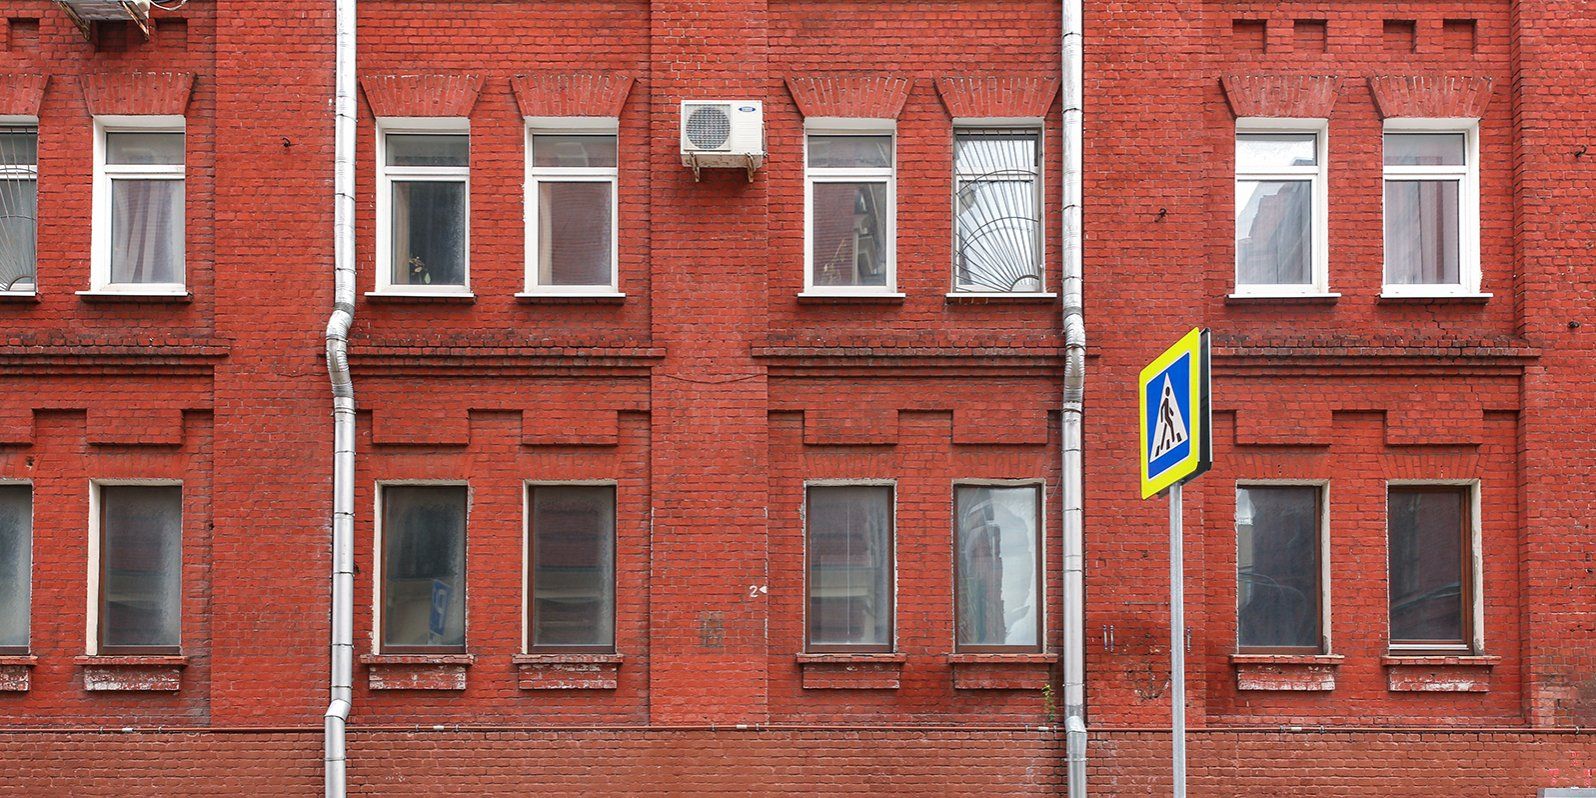 Помещение расположено в доме с кирпичной кладкой. Фото: сайт мэра Москвы